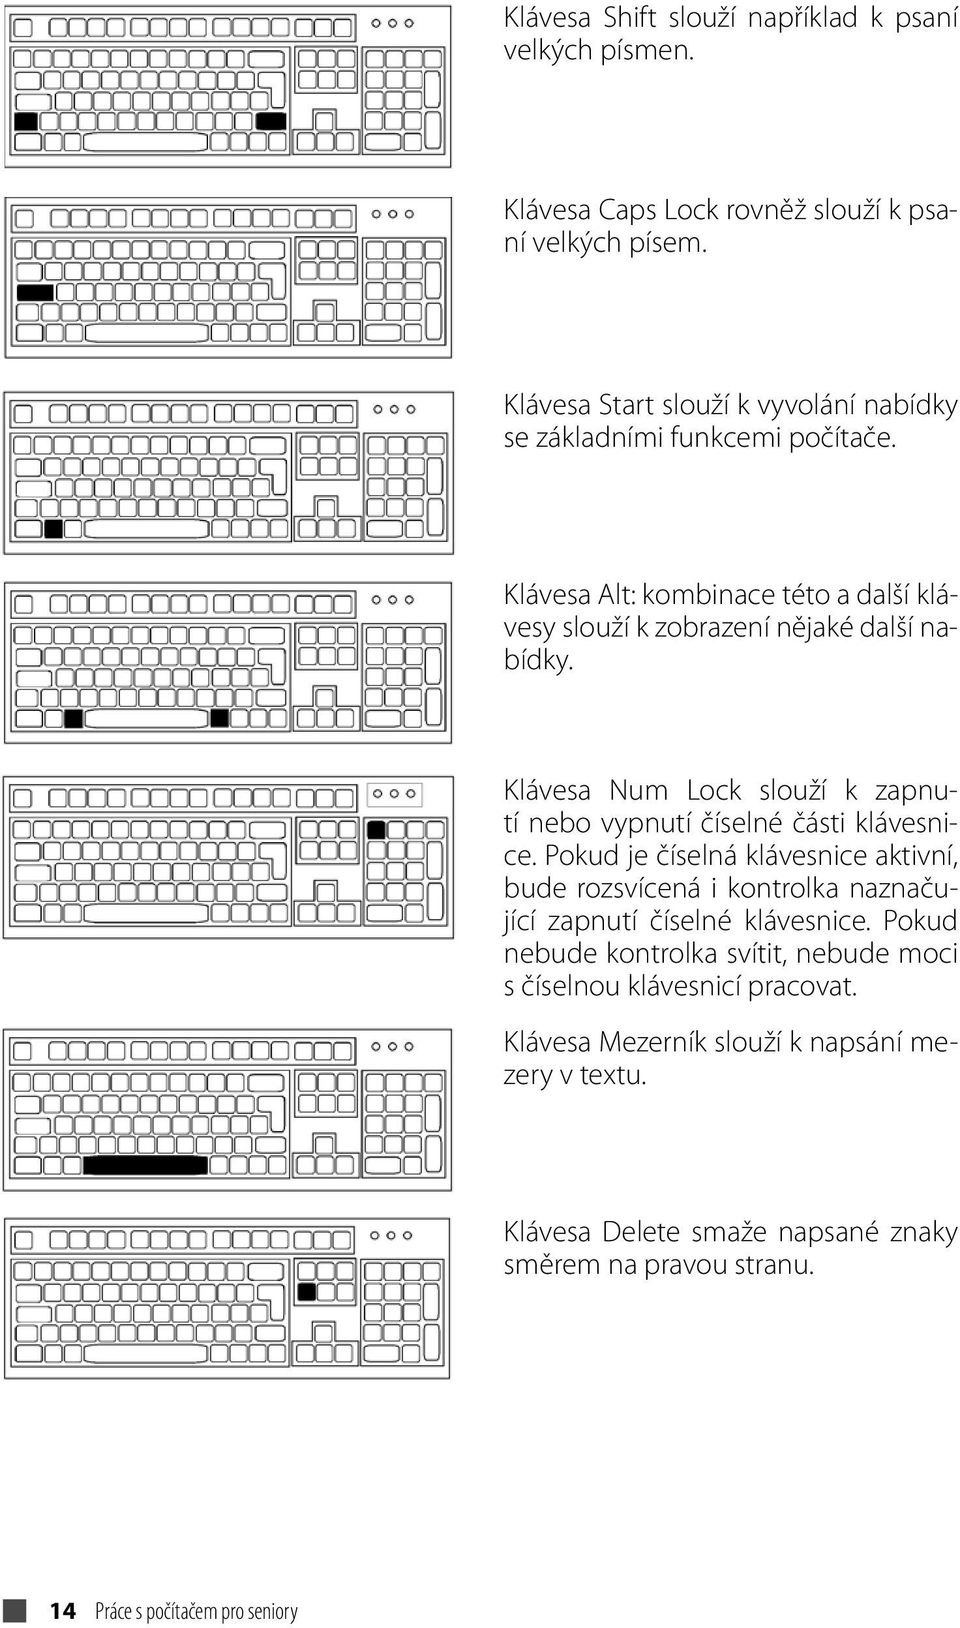 Klávesa Num Lock slouží k zapnutí nebo vypnutí číselné části klávesnice.